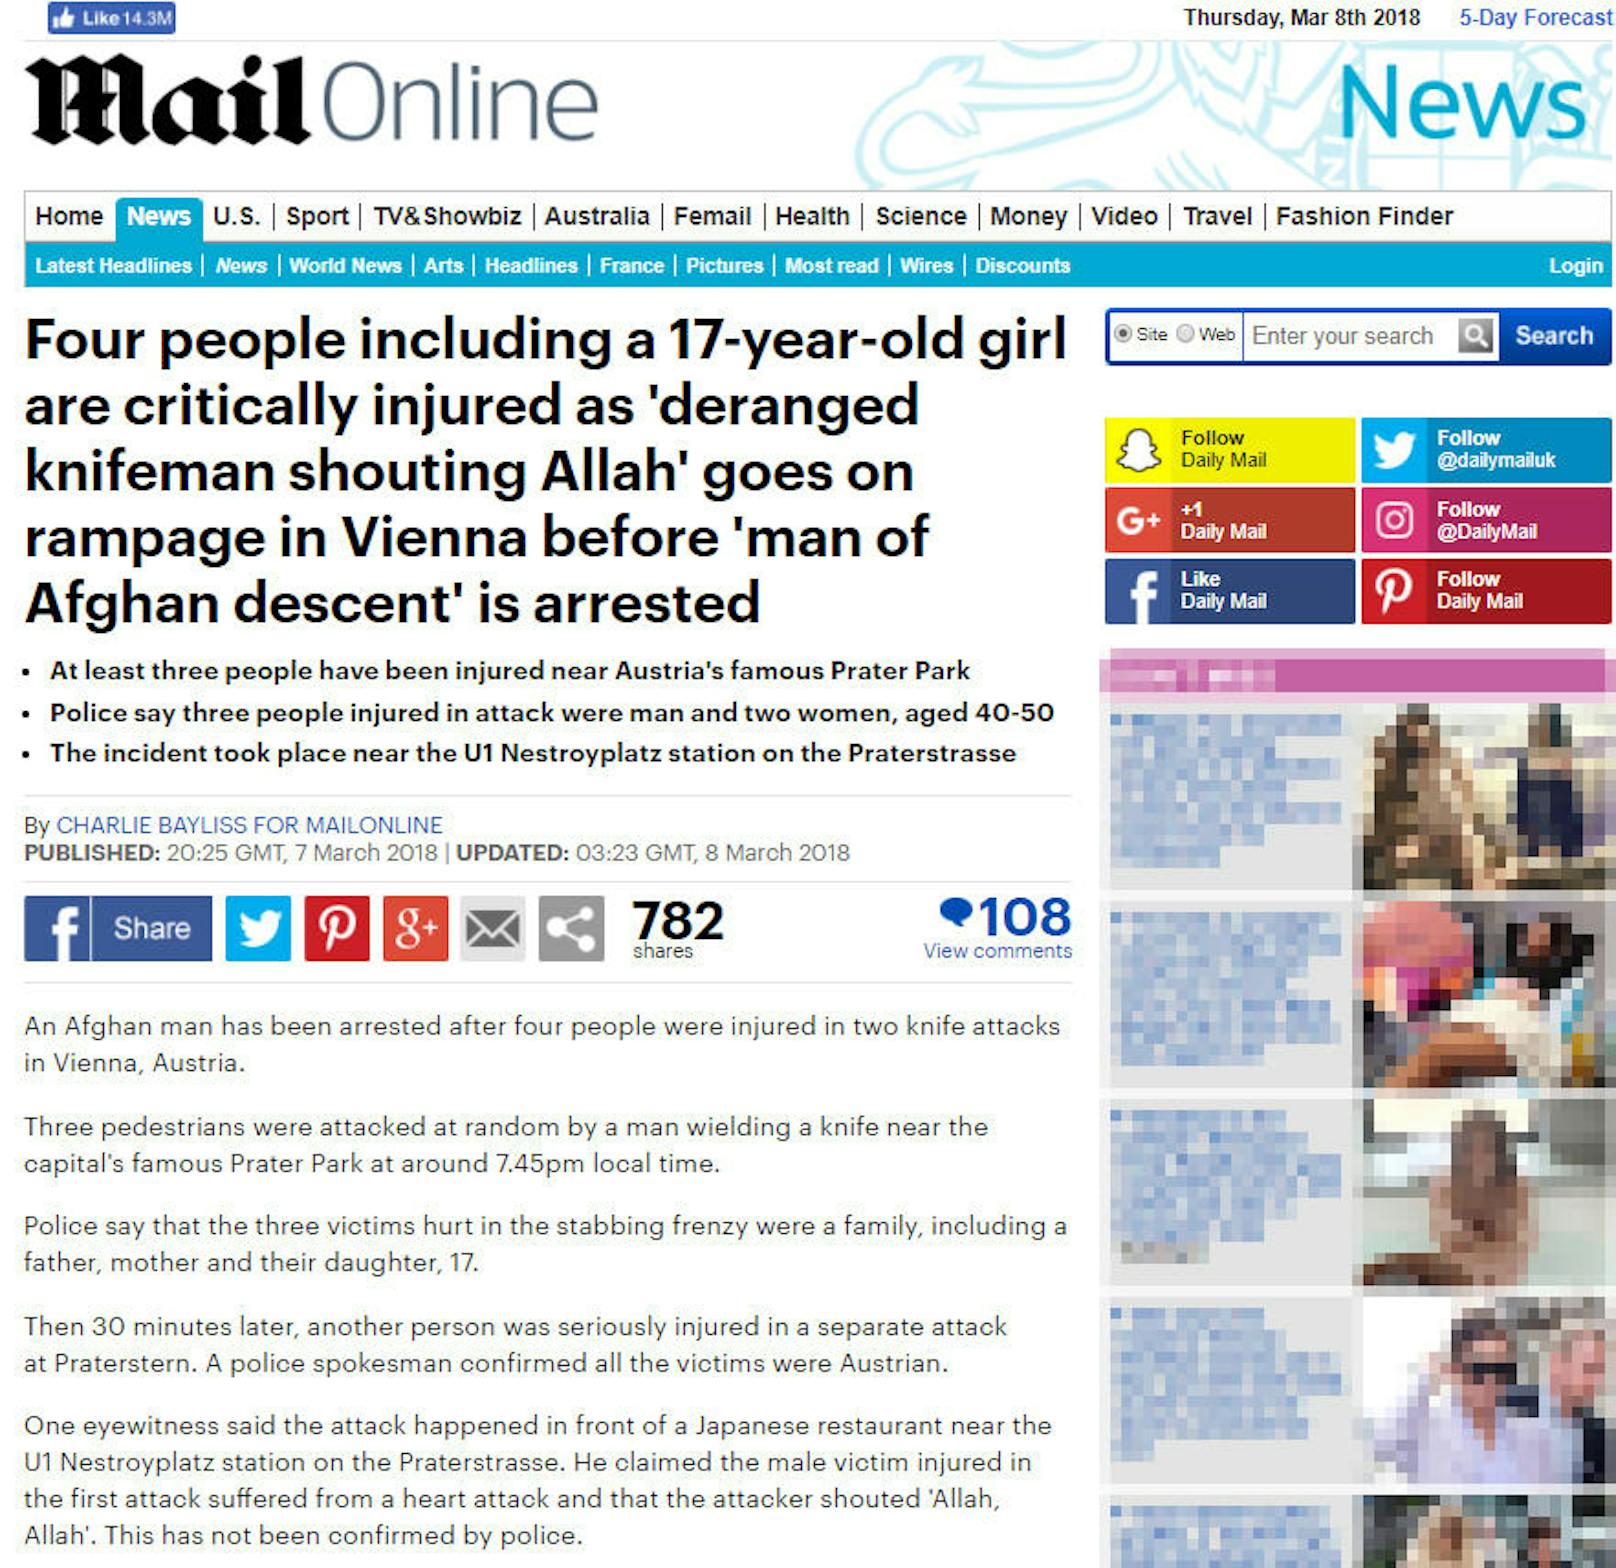 <b>Großbritannien, Daily Mail: </b>"Vier Menschen, darunter ein 17 Jahre altes Mädchen wurden lebensgefährlich verletzt als ein 'irrer Messermann, der Allah schrie' in Wien randalierte, bevor ein 'Mann afghanischer Abstammung' festgenommen wurde"